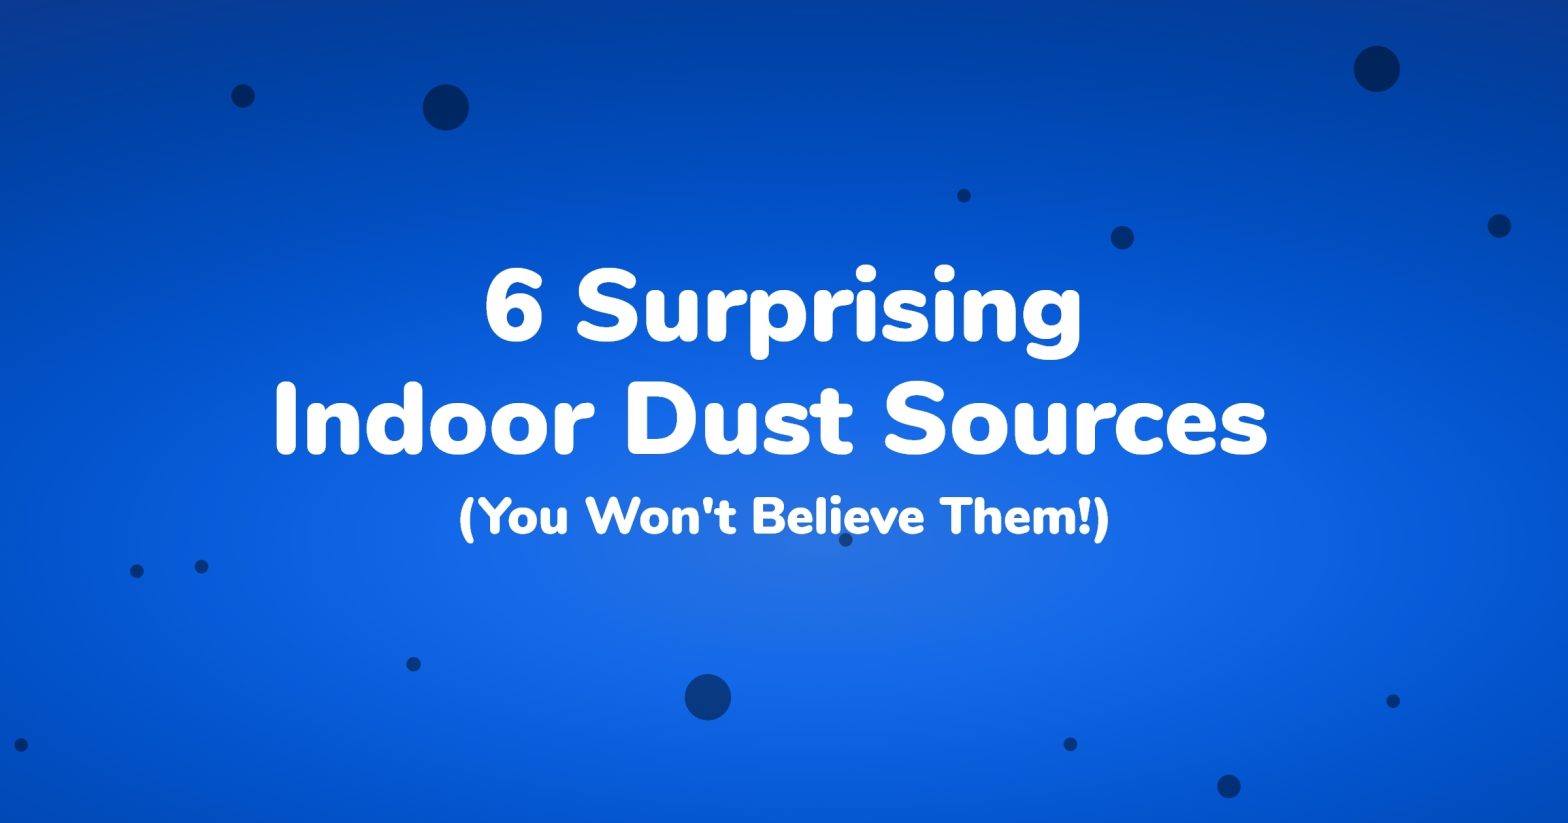 6 Surprising Indoor Dust Sources (You Won't Believe